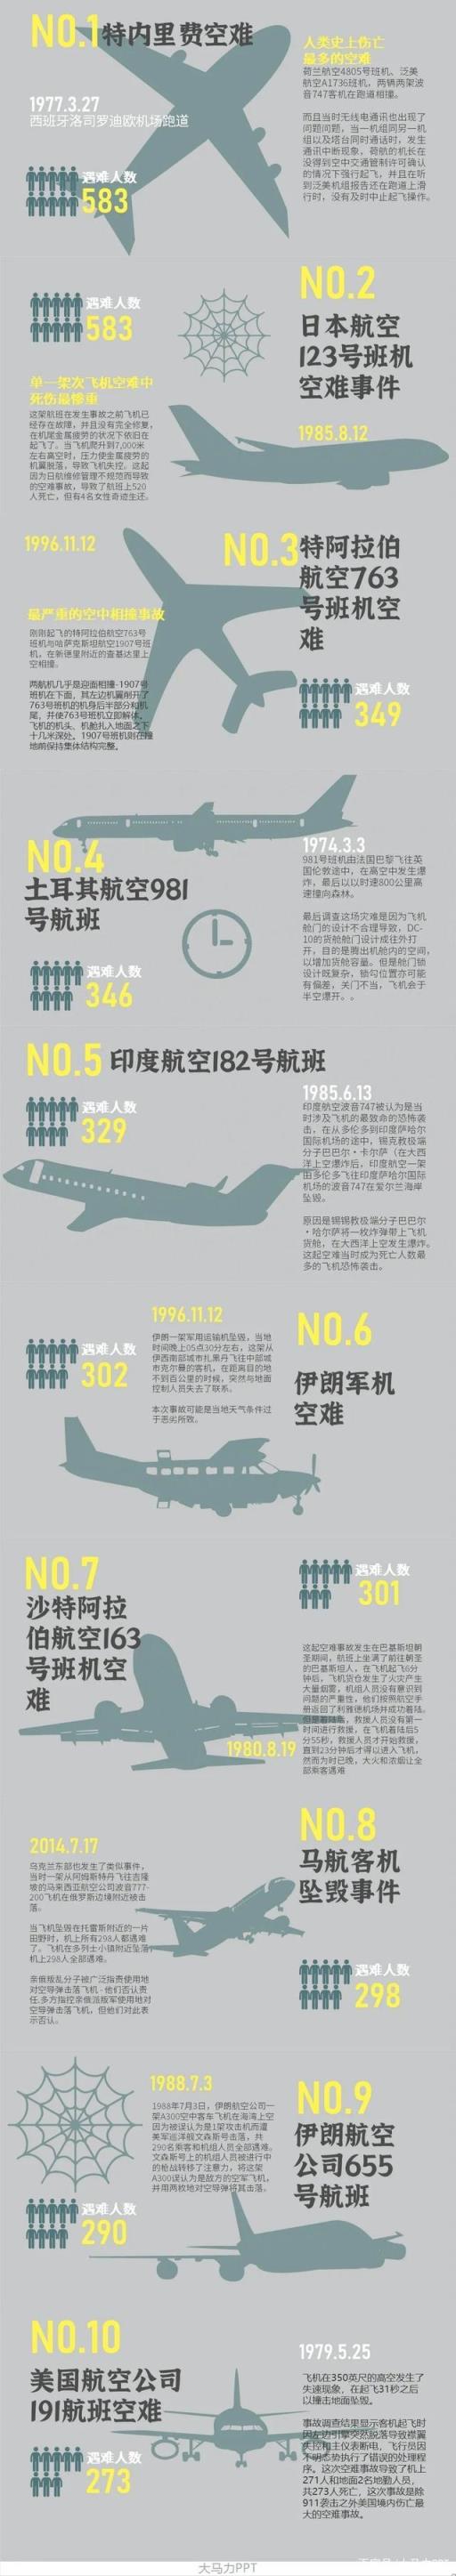 世界上最严重的空难583人遇难(世界上最惨重的空难)